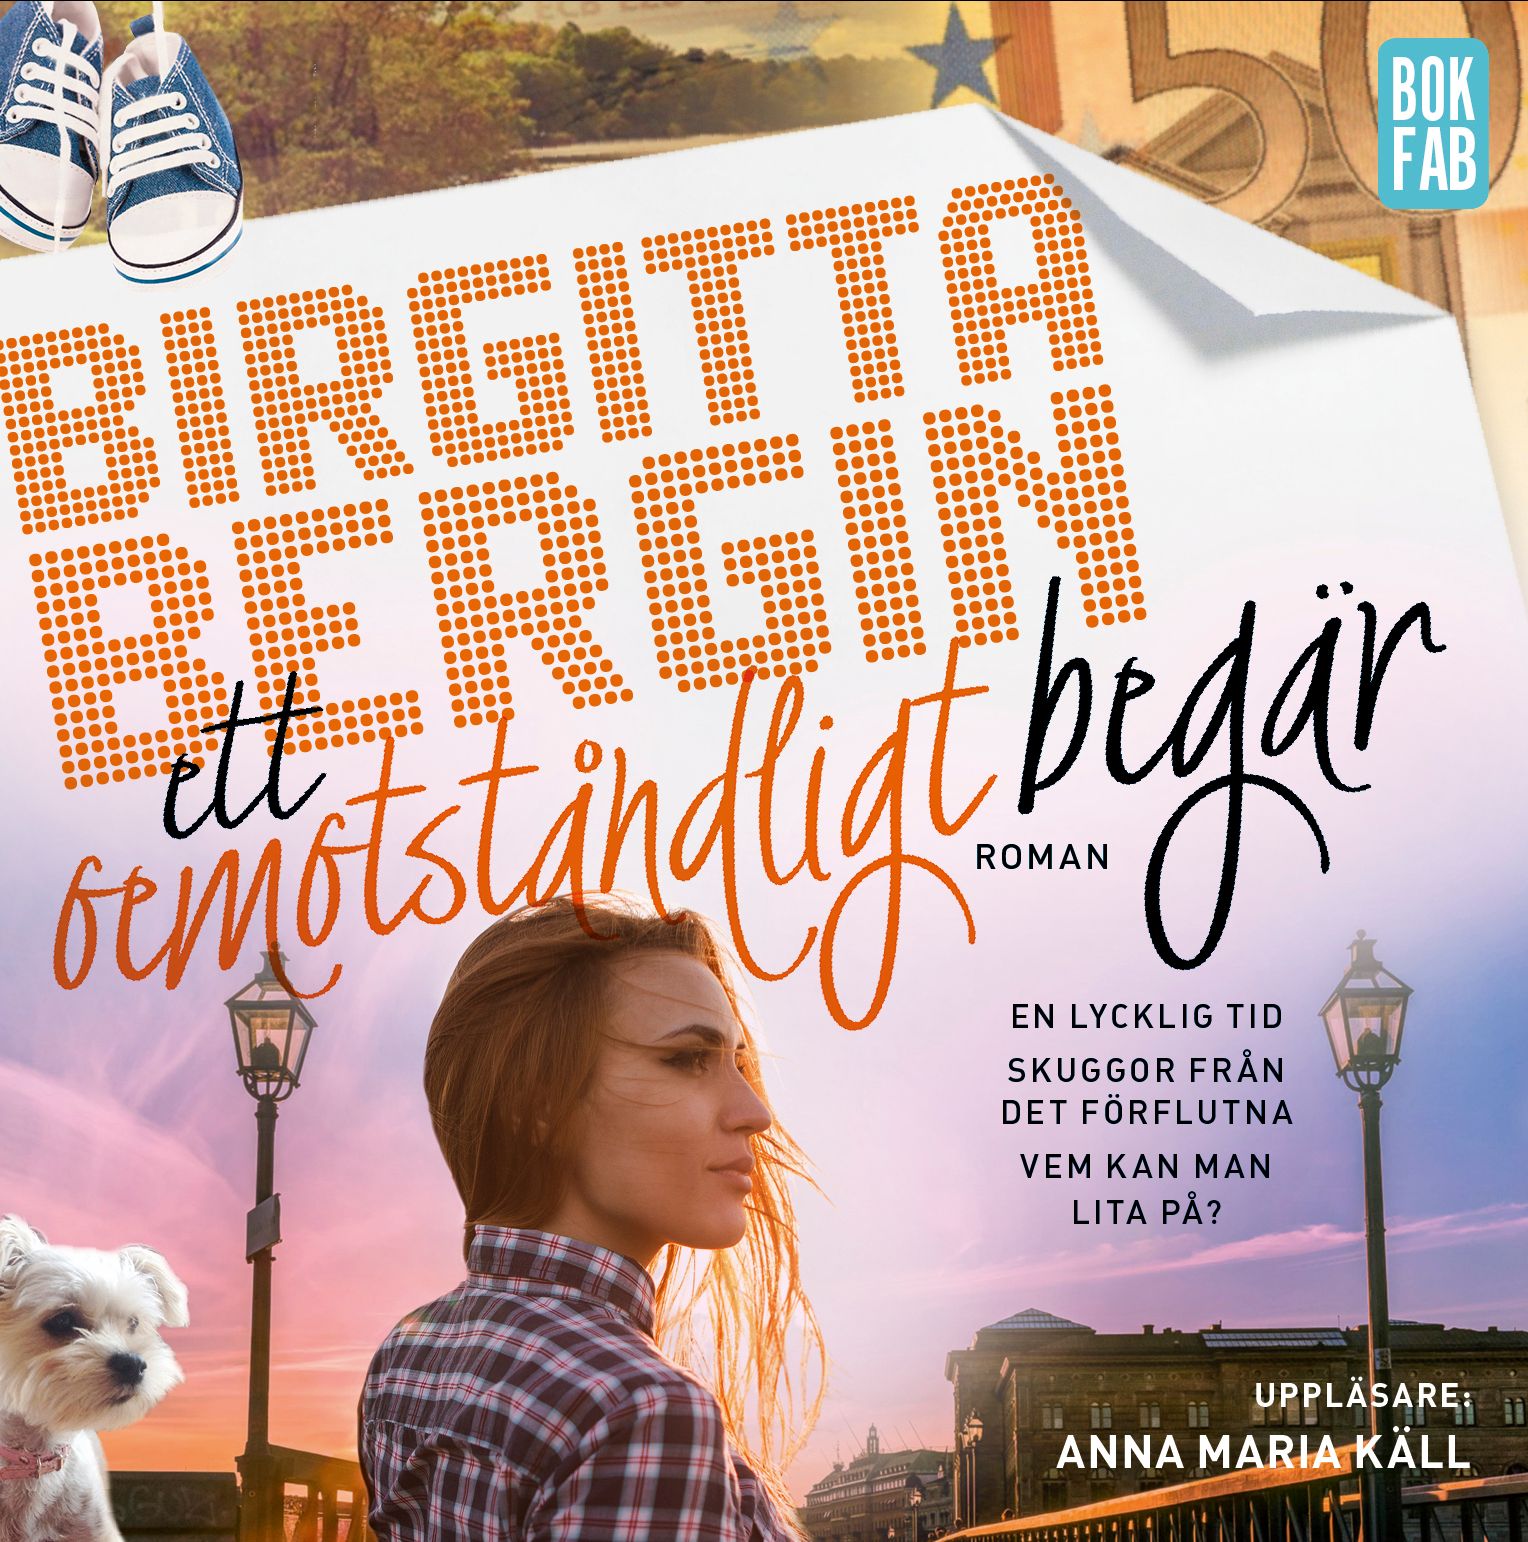 Ett oemotståndligt begär, ljudbok av Birgitta Bergin